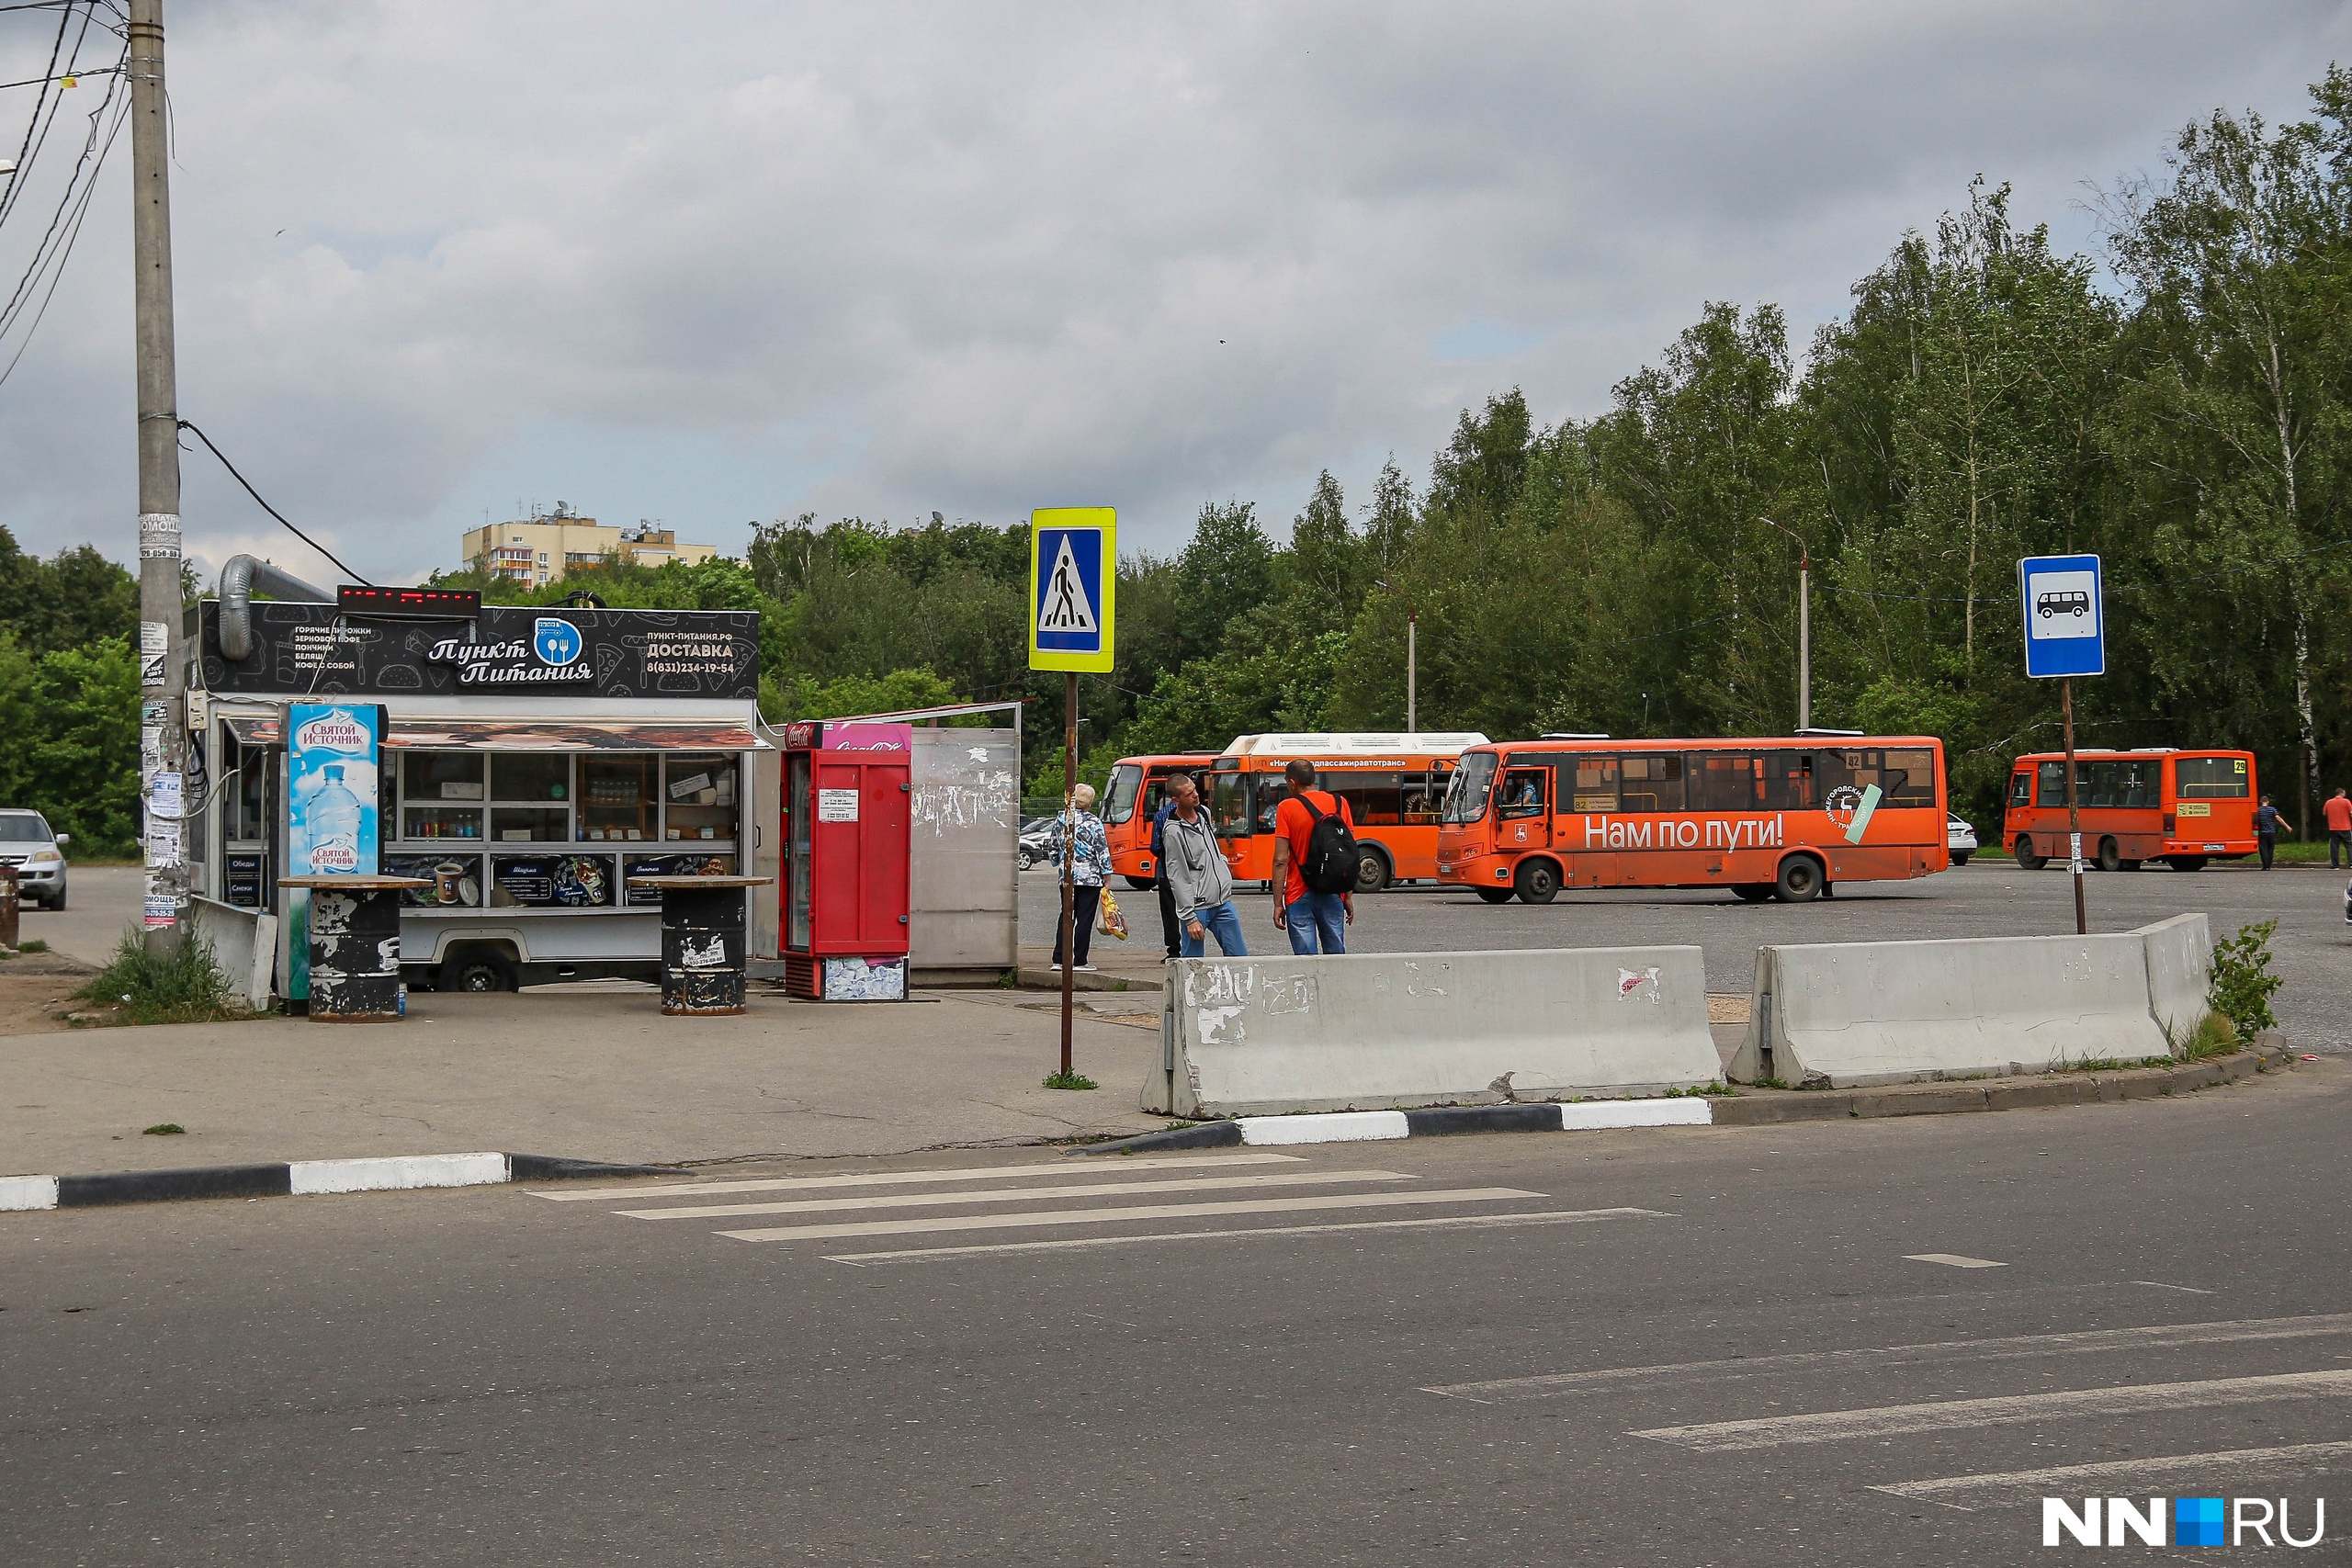 Нижегородского перевозчика намерены лишить популярного маршрута из-за нарушения расписания